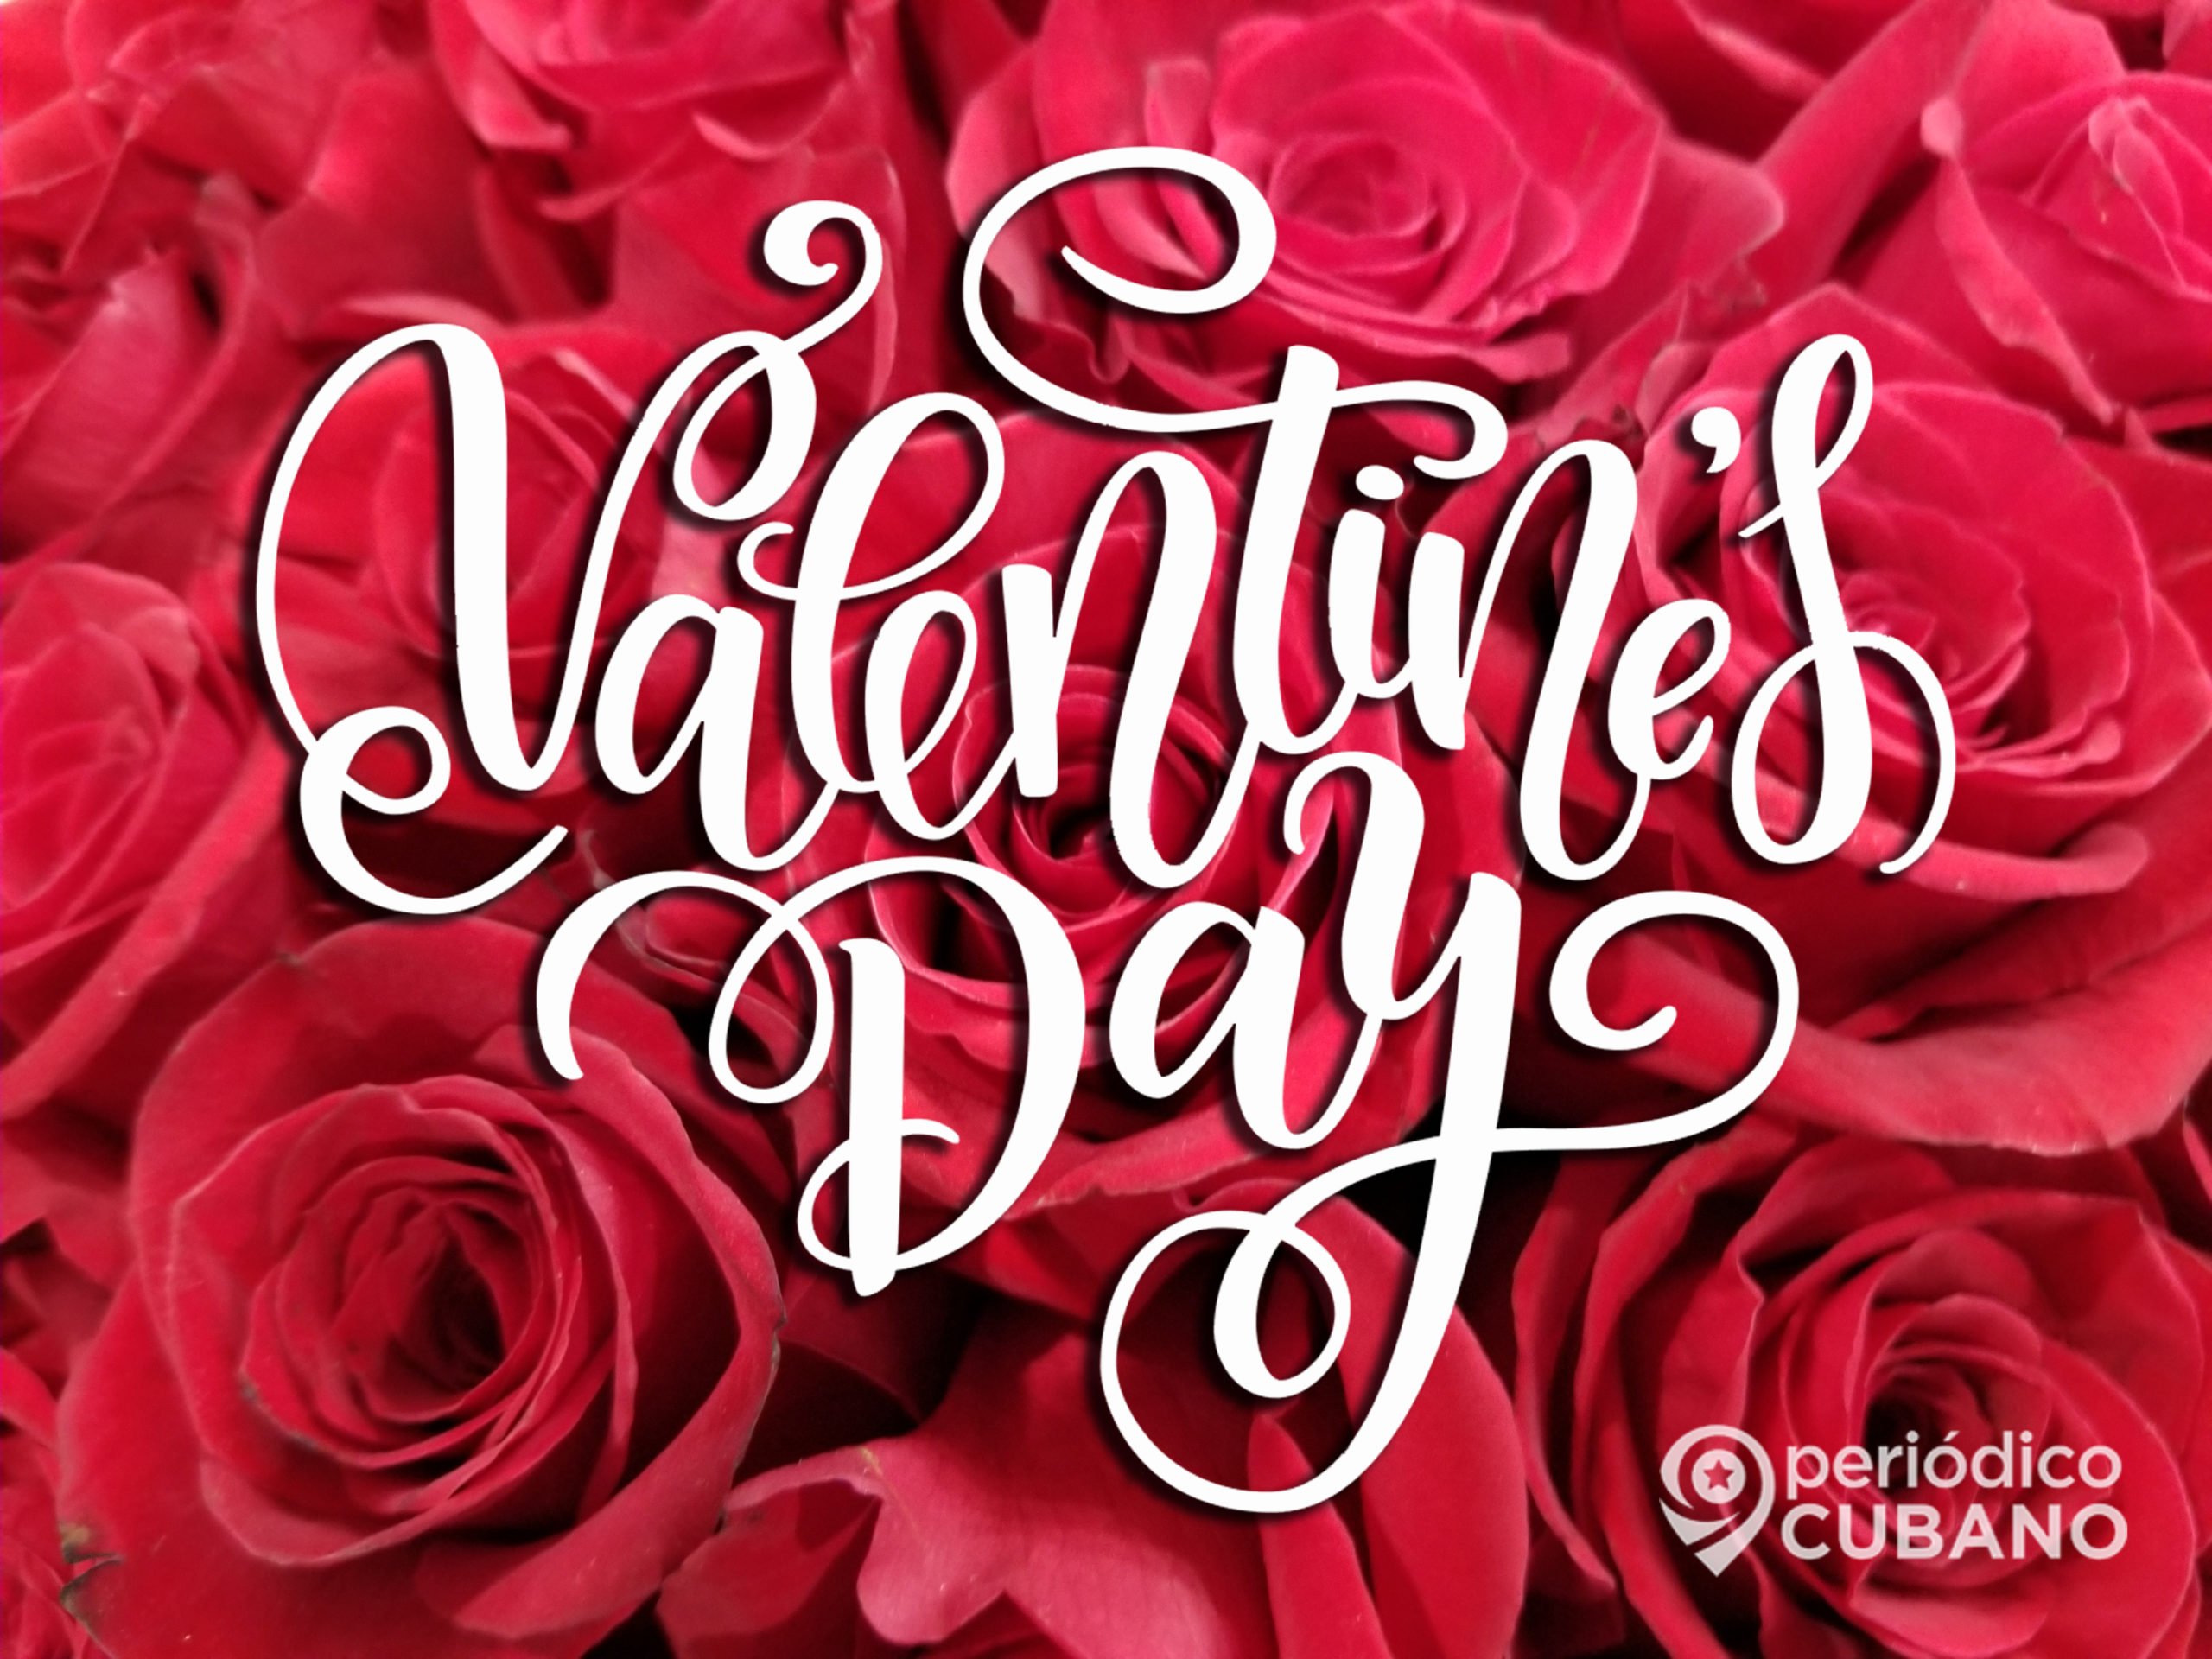 Por qué se celebra el 14 de febrero el Día de San Valentín?